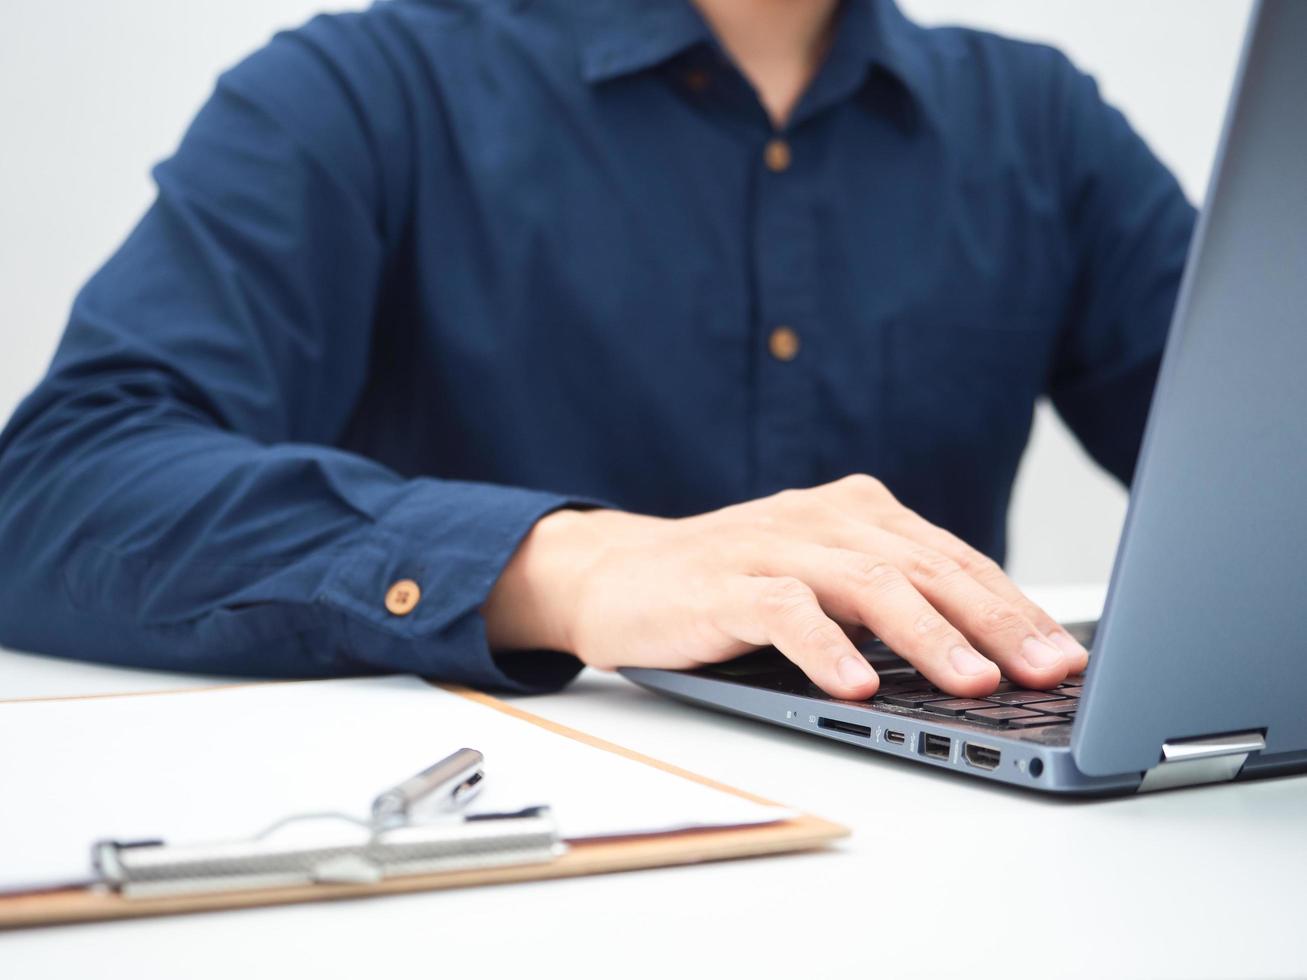 Captura de pantalla de un hombre que usa una computadora portátil en la mesa con un tablero de documentos y un bolígrafo foto